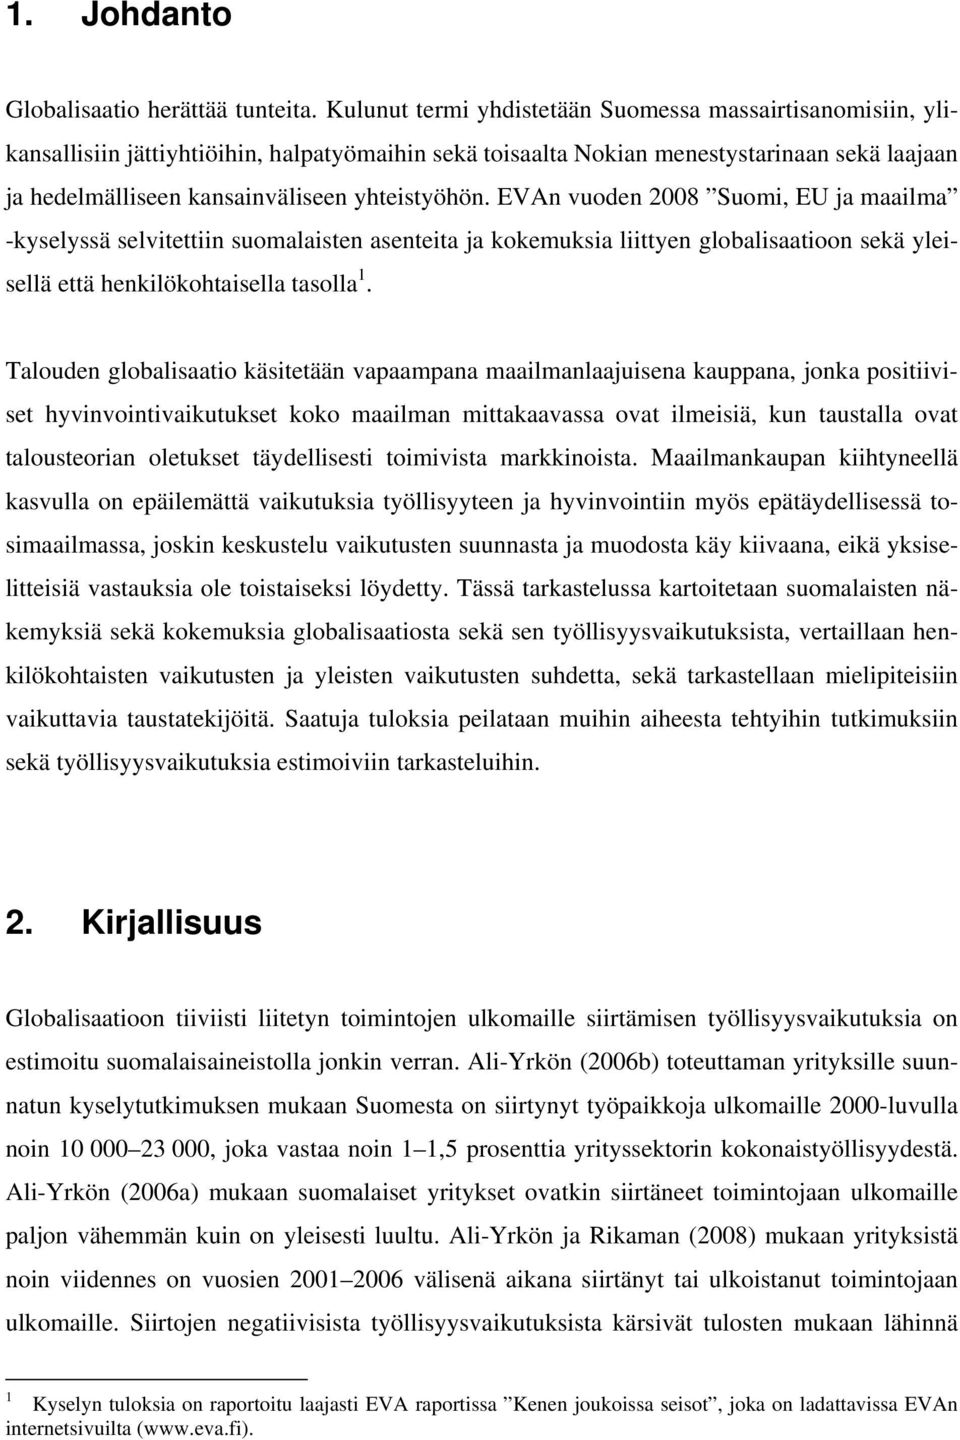 yhteistyöhön. EVAn vuoden 2008 Suomi, EU ja maailma -kyselyssä selvitettiin suomalaisten asenteita ja kokemuksia liittyen globalisaatioon sekä yleisellä että henkilökohtaisella tasolla 1.